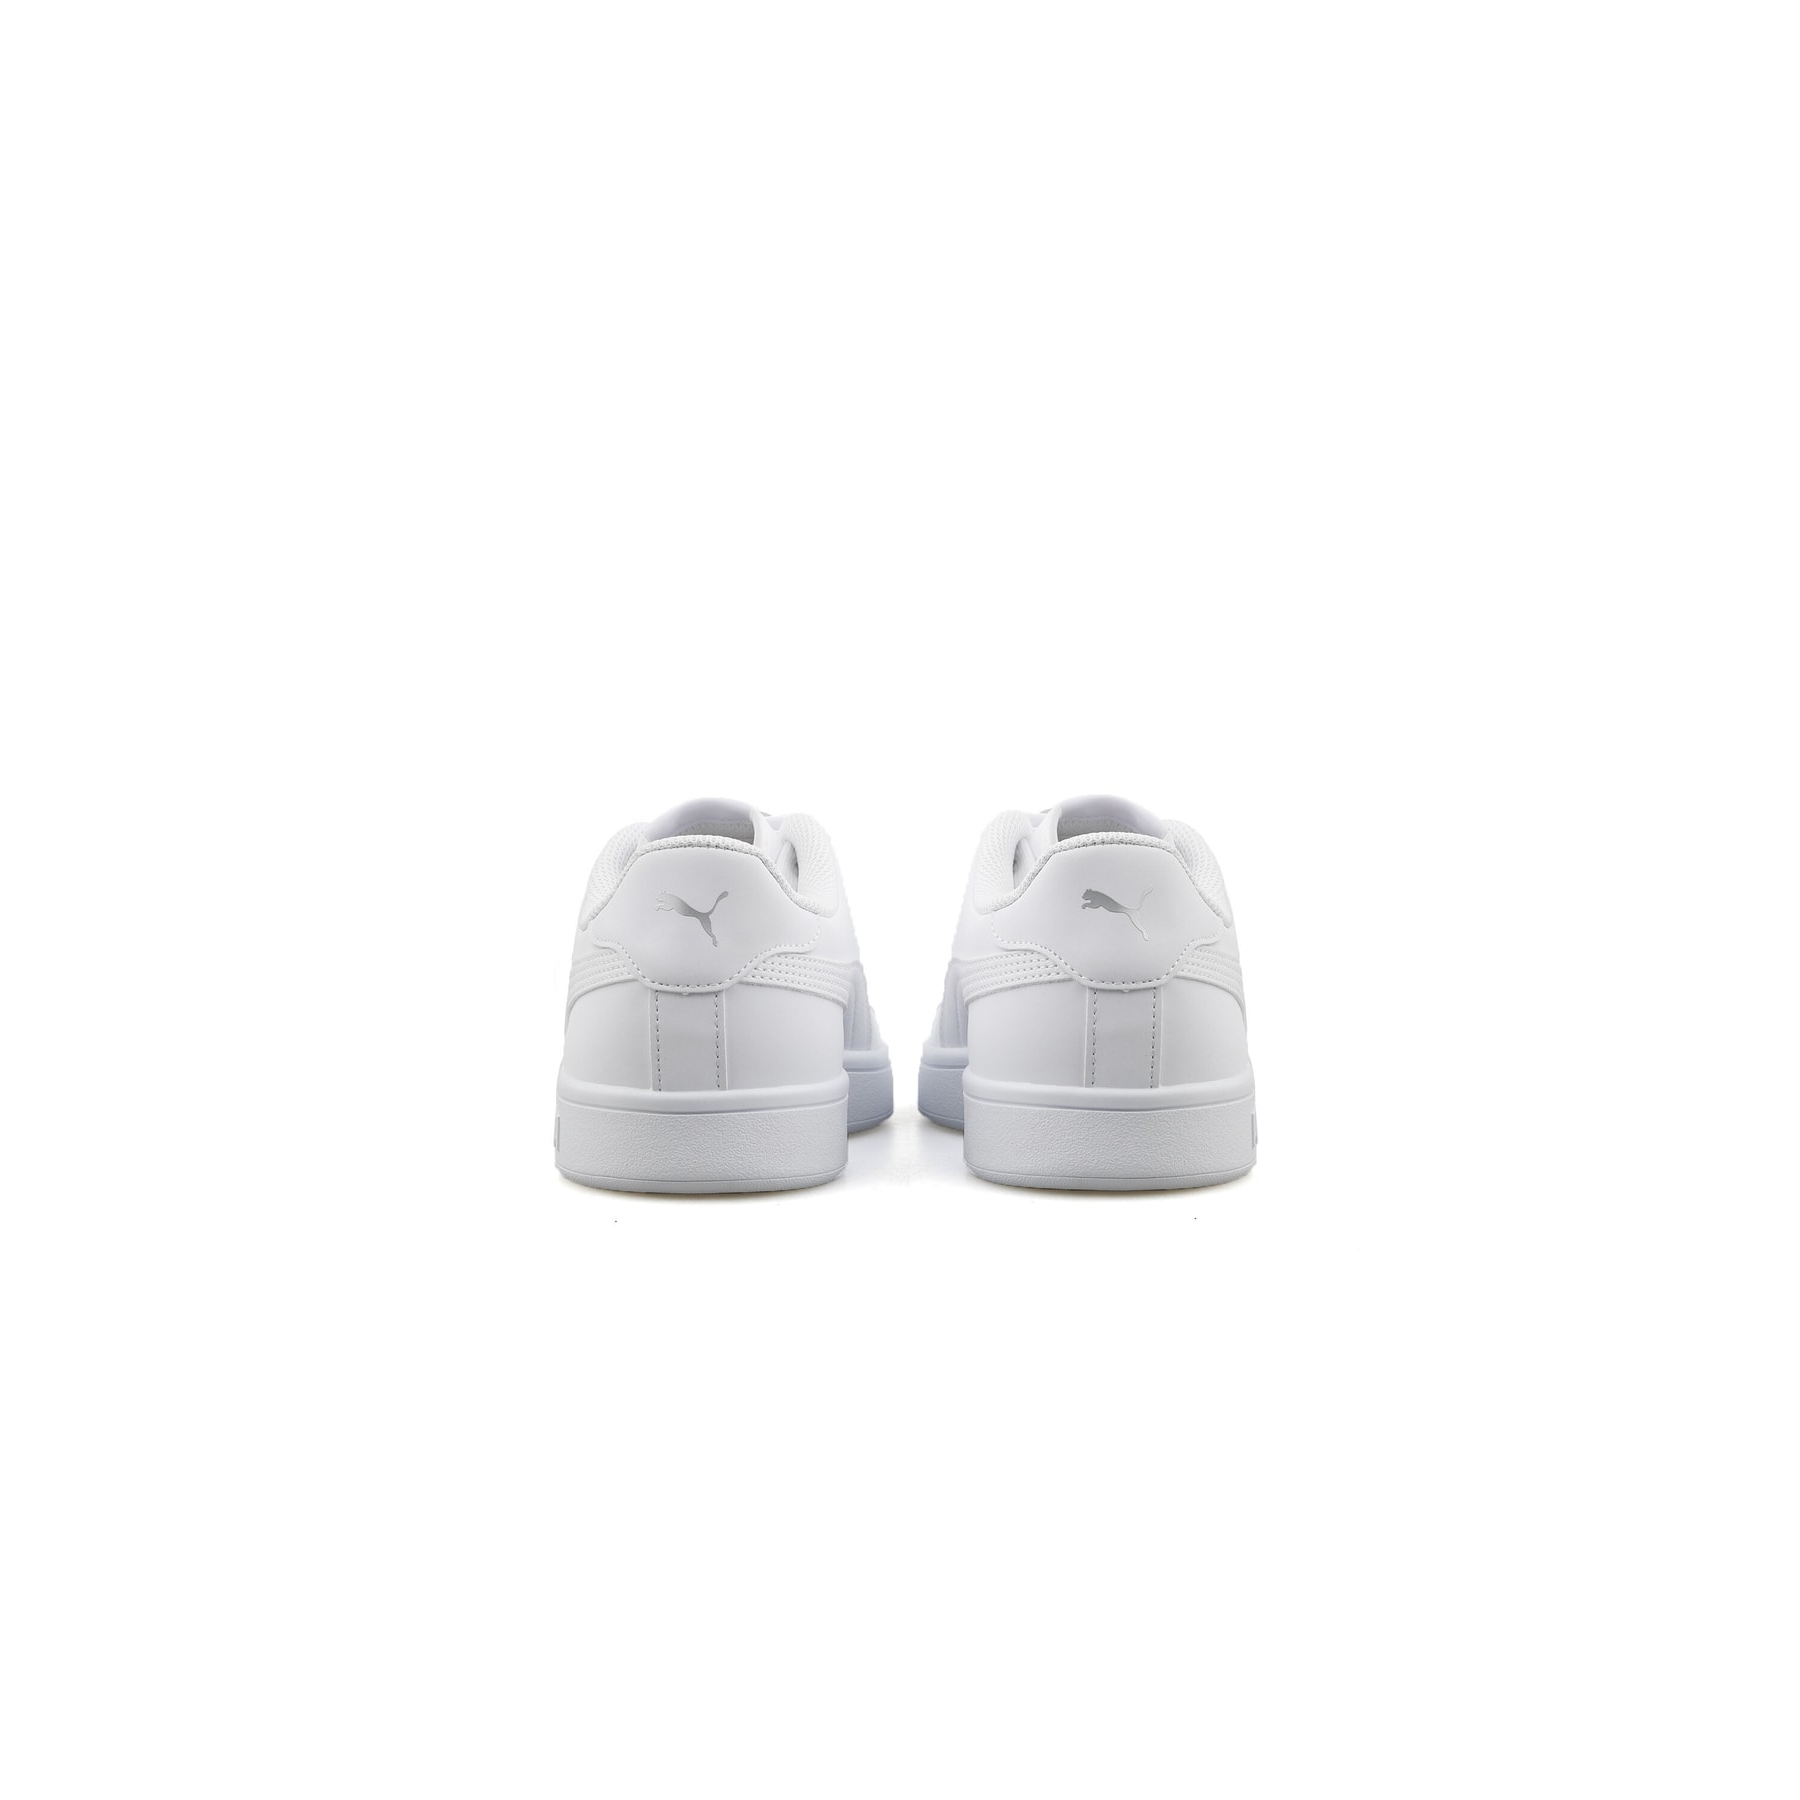 Puma Smash V2 Beyaz Spor Ayakkabı (365160-73)